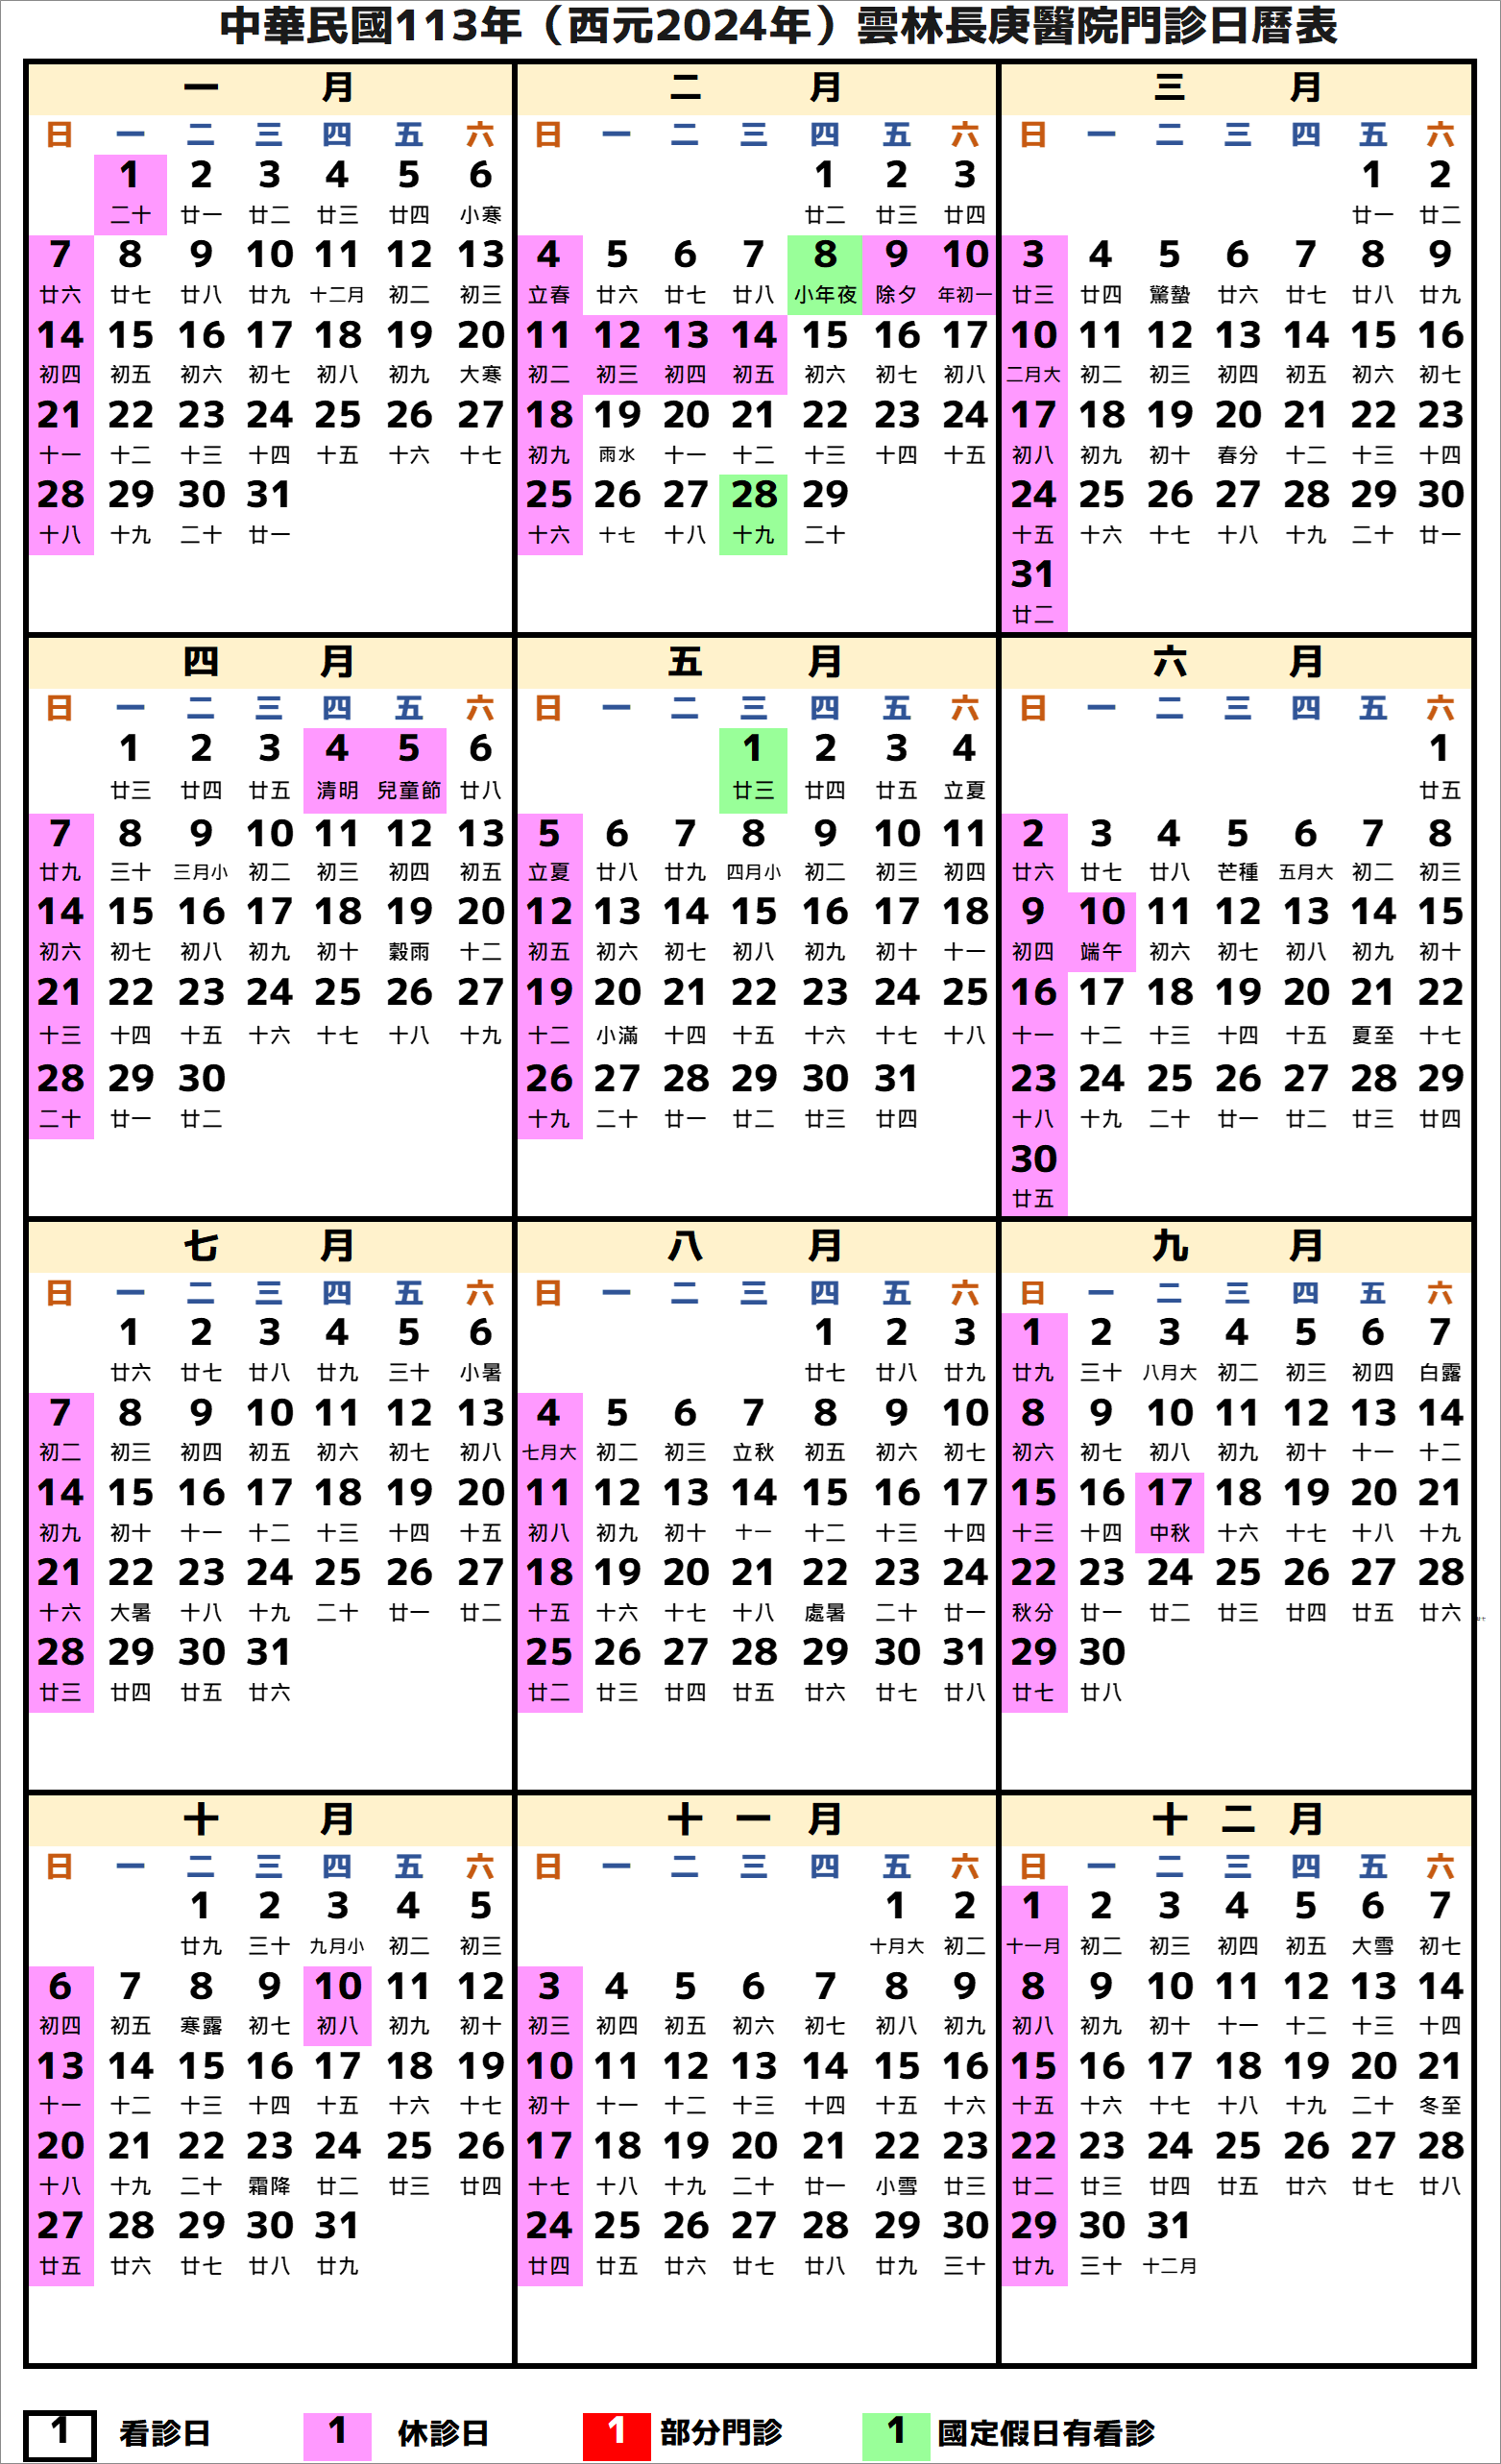 雲林長庚醫院行事曆2024年-民國113年